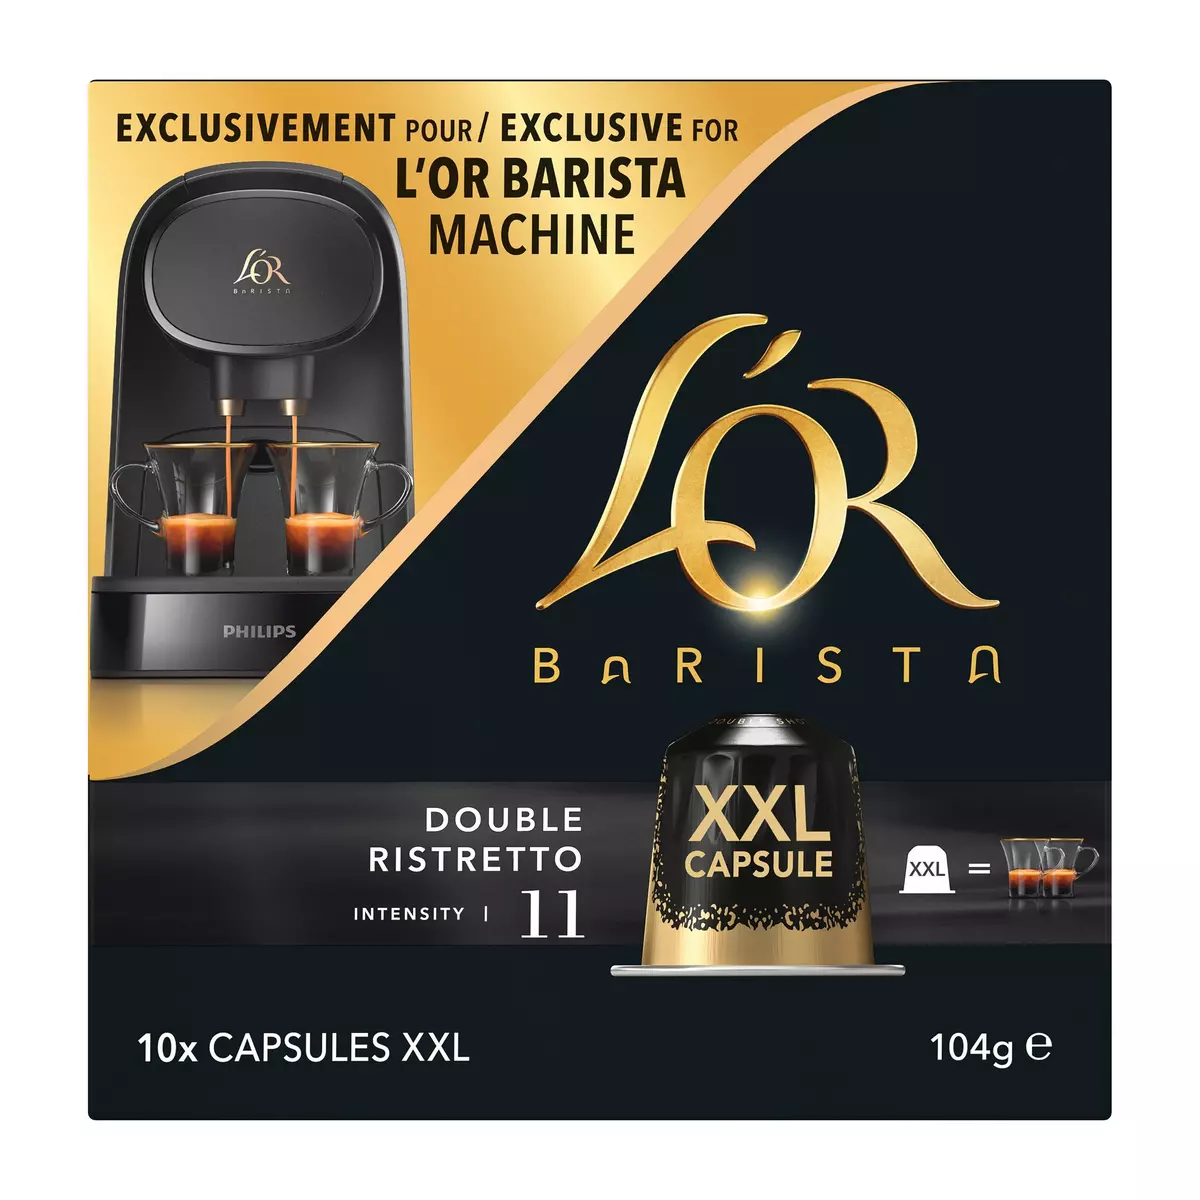 L'OR BARISTA Capsules de café double ristretto intensité 11 compatibles L'Or Barista 10 capsules 104g